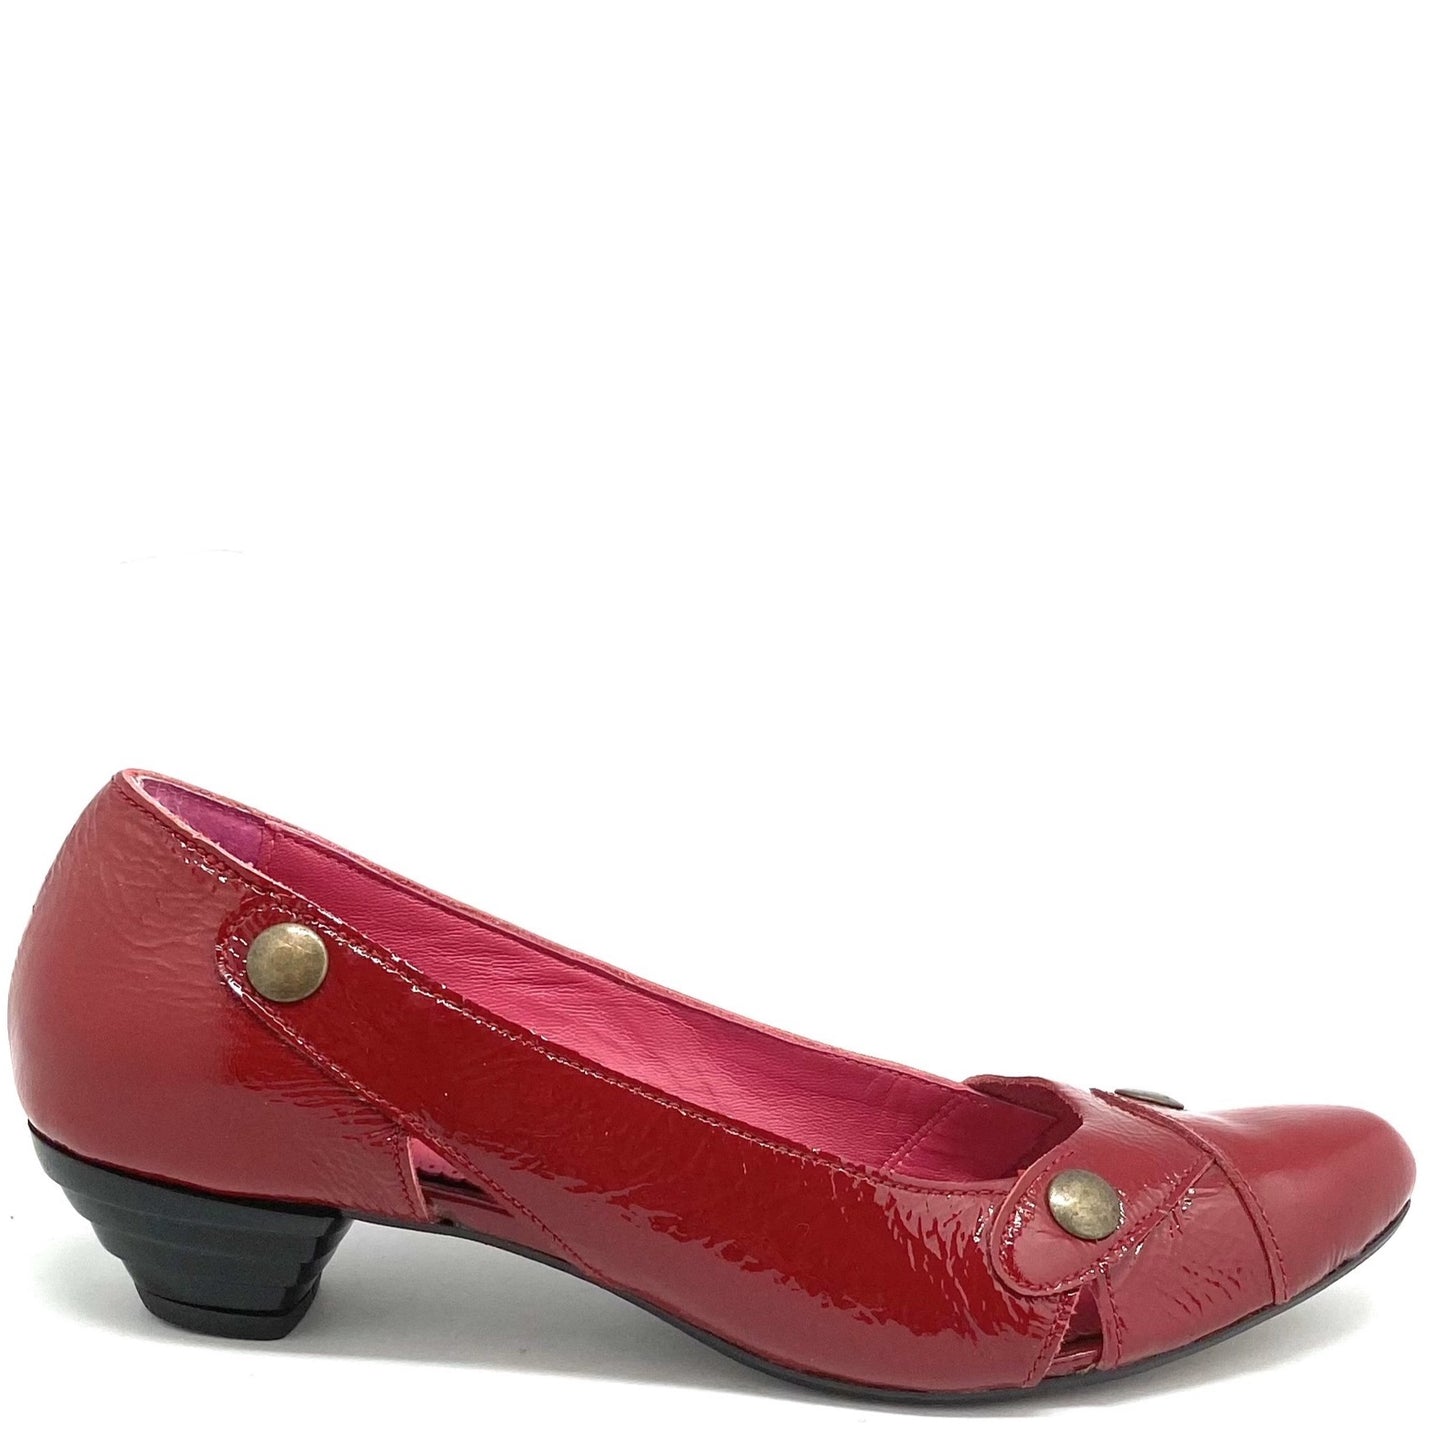 Clique - Red Patent- Last pair 36!